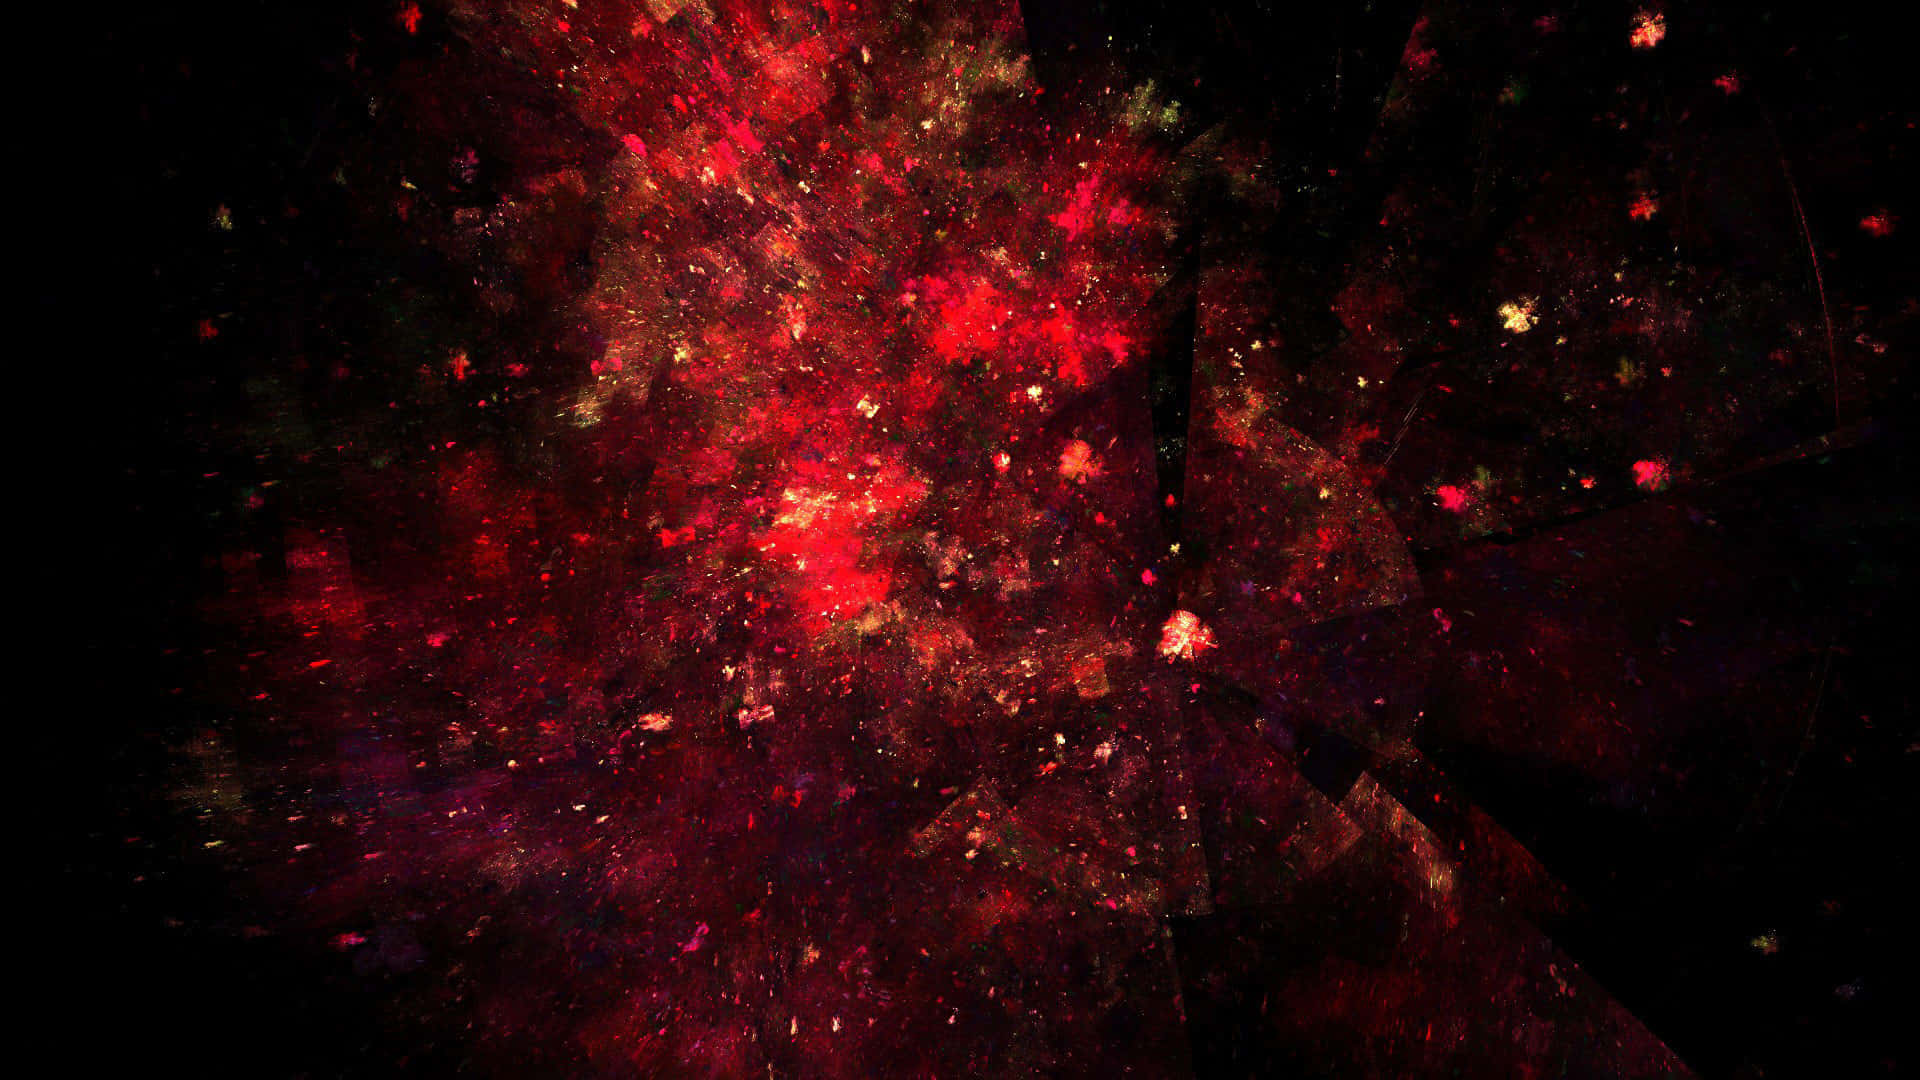 Nebulosaspaziale Rossa Mistica.